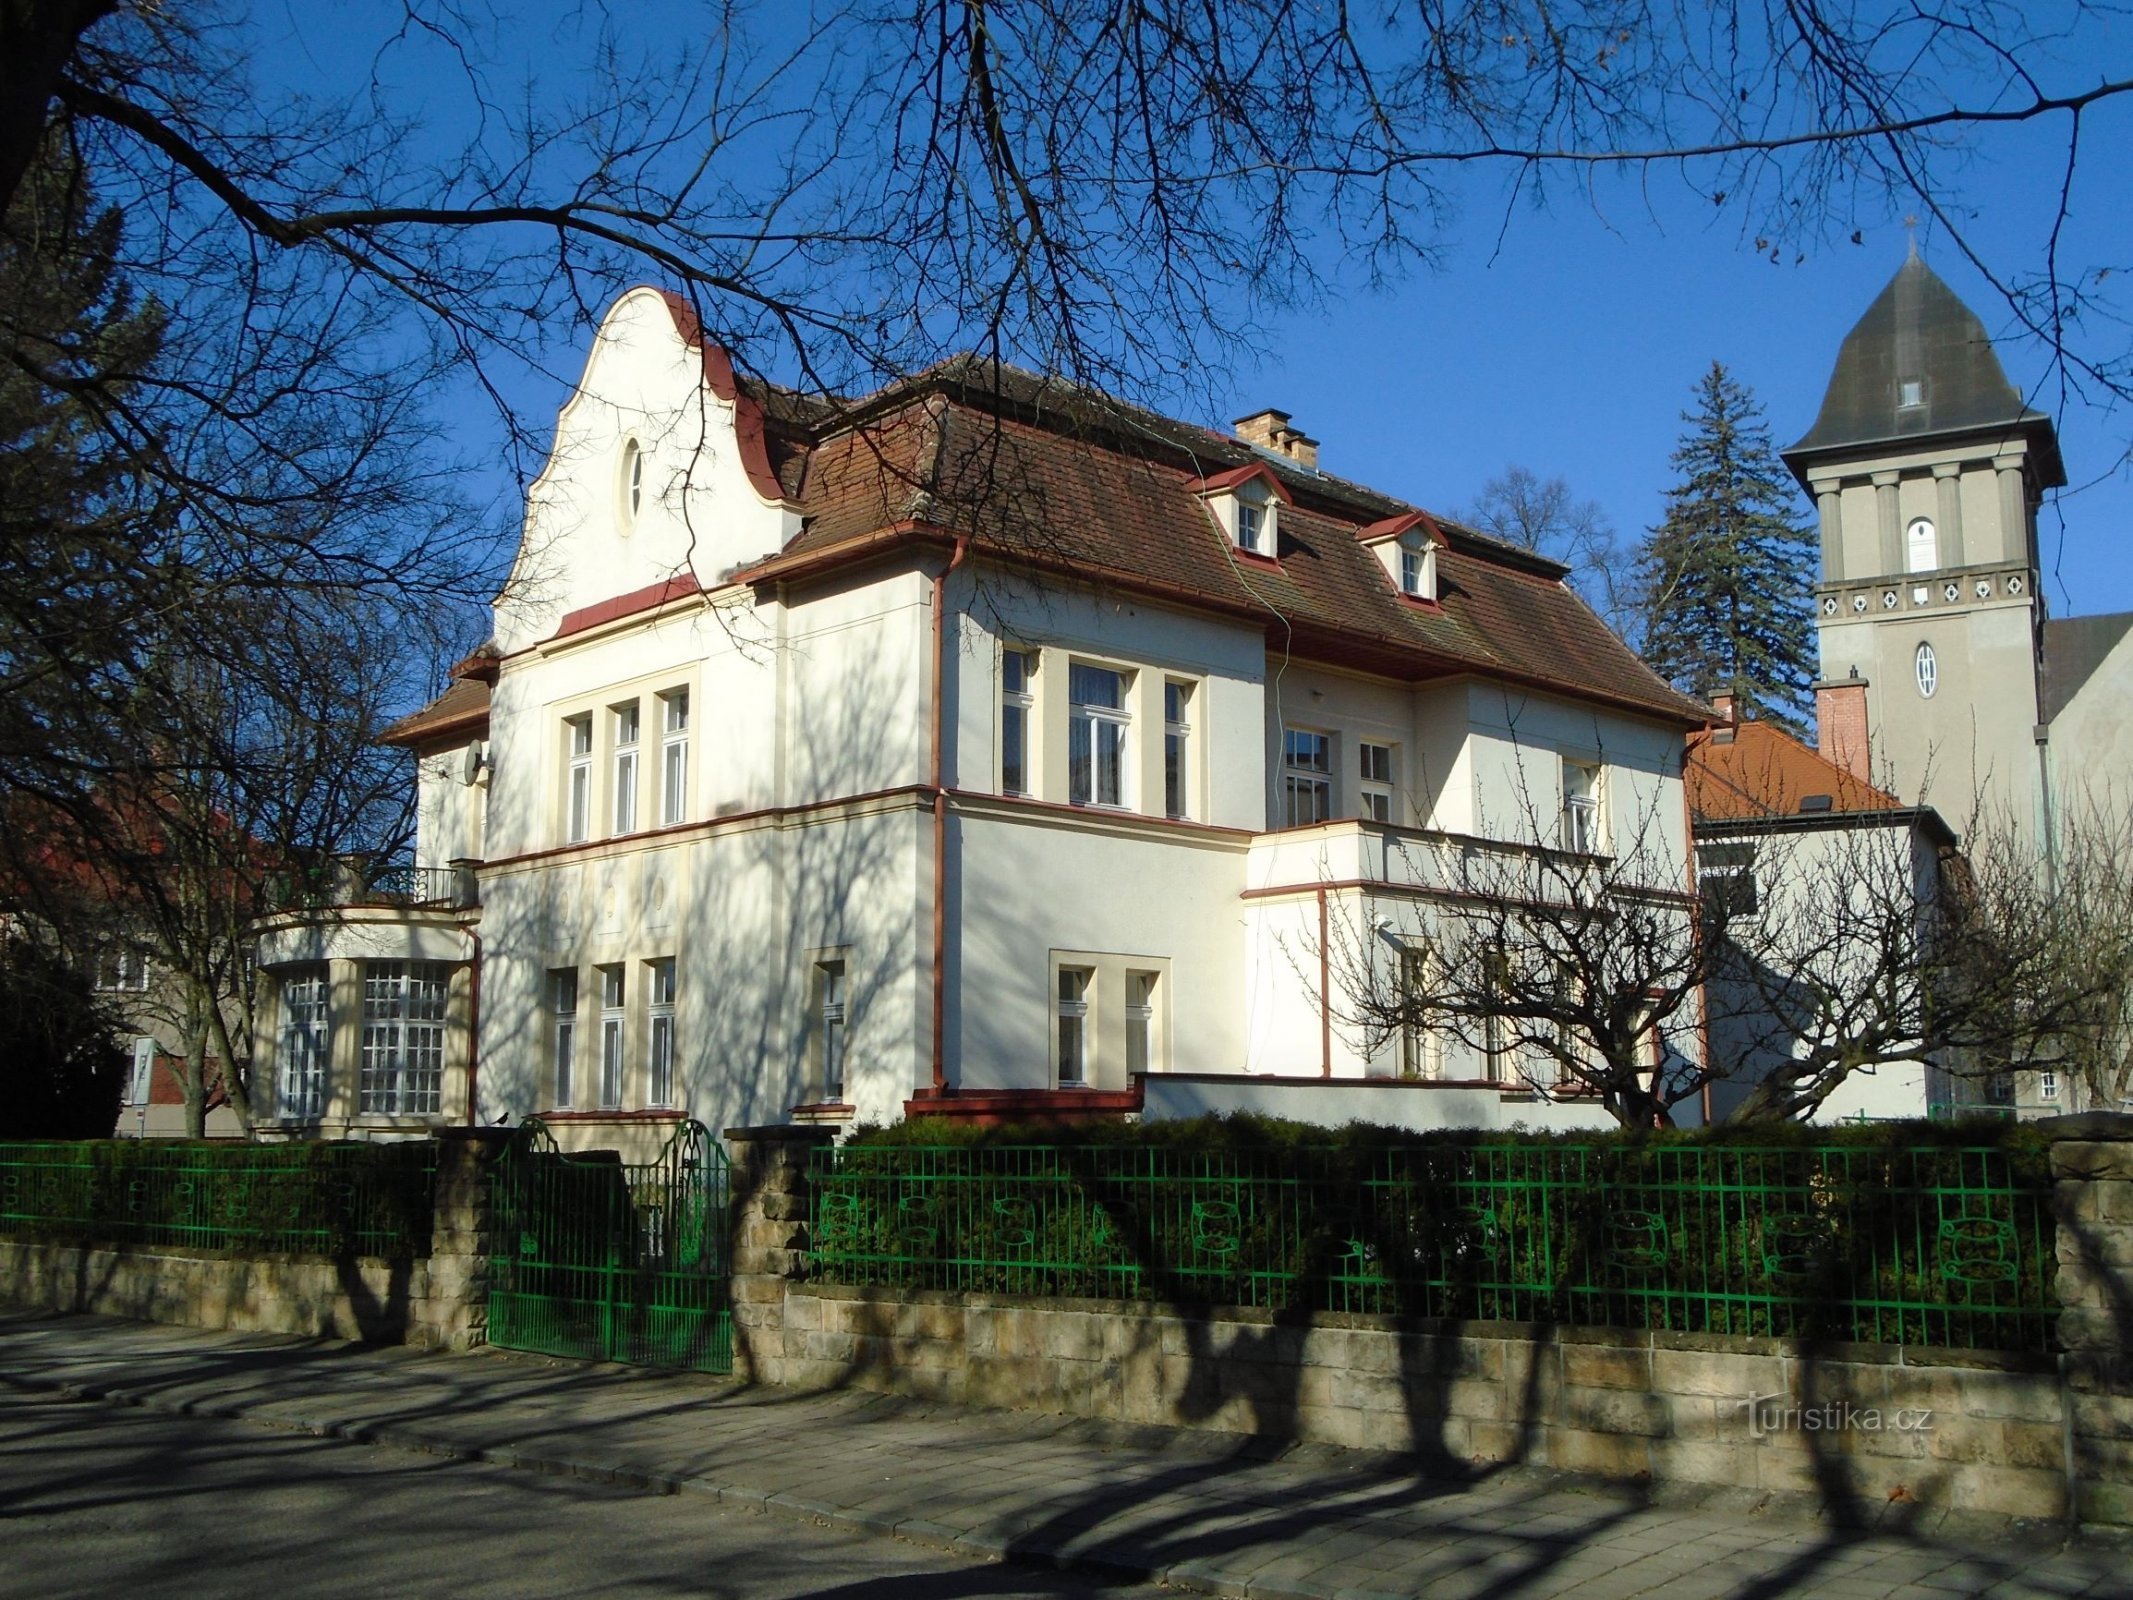 Slott nr. 545 (Hradec Králové, 7.4.2018 april XNUMX)